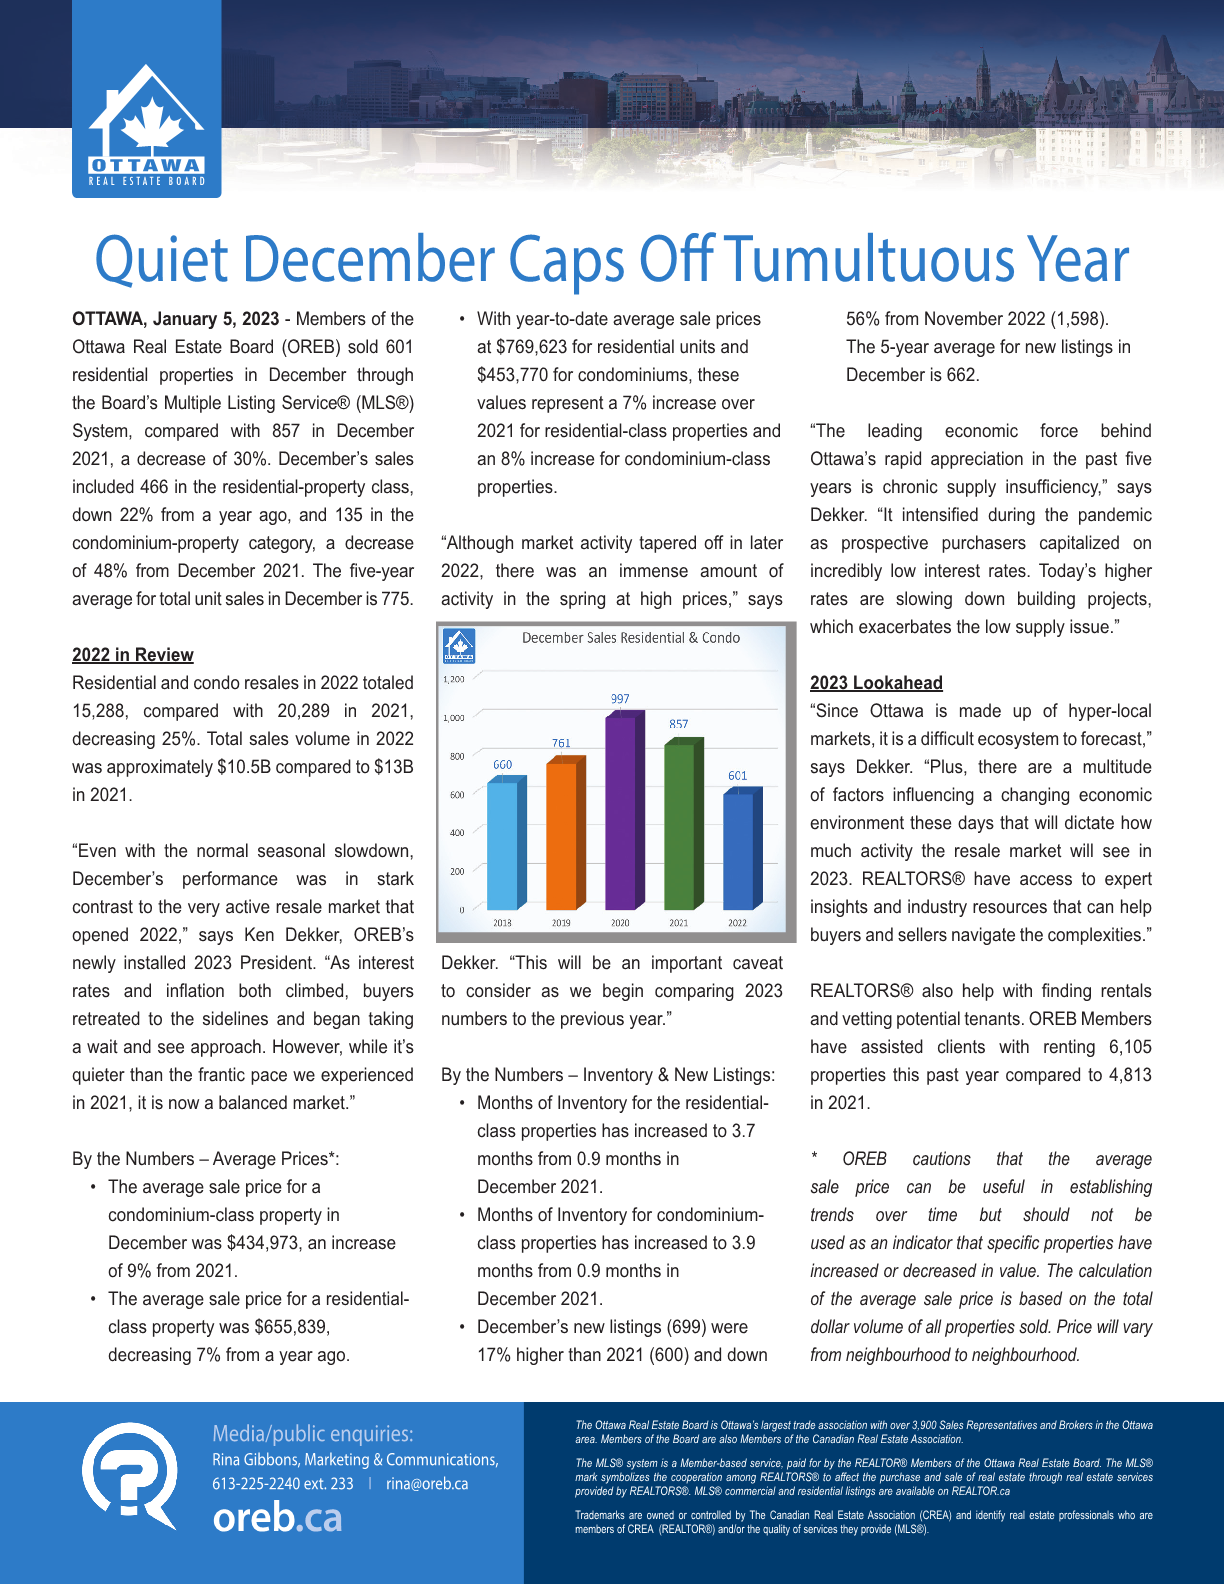 Quiet December Caps off Tumultuous Year